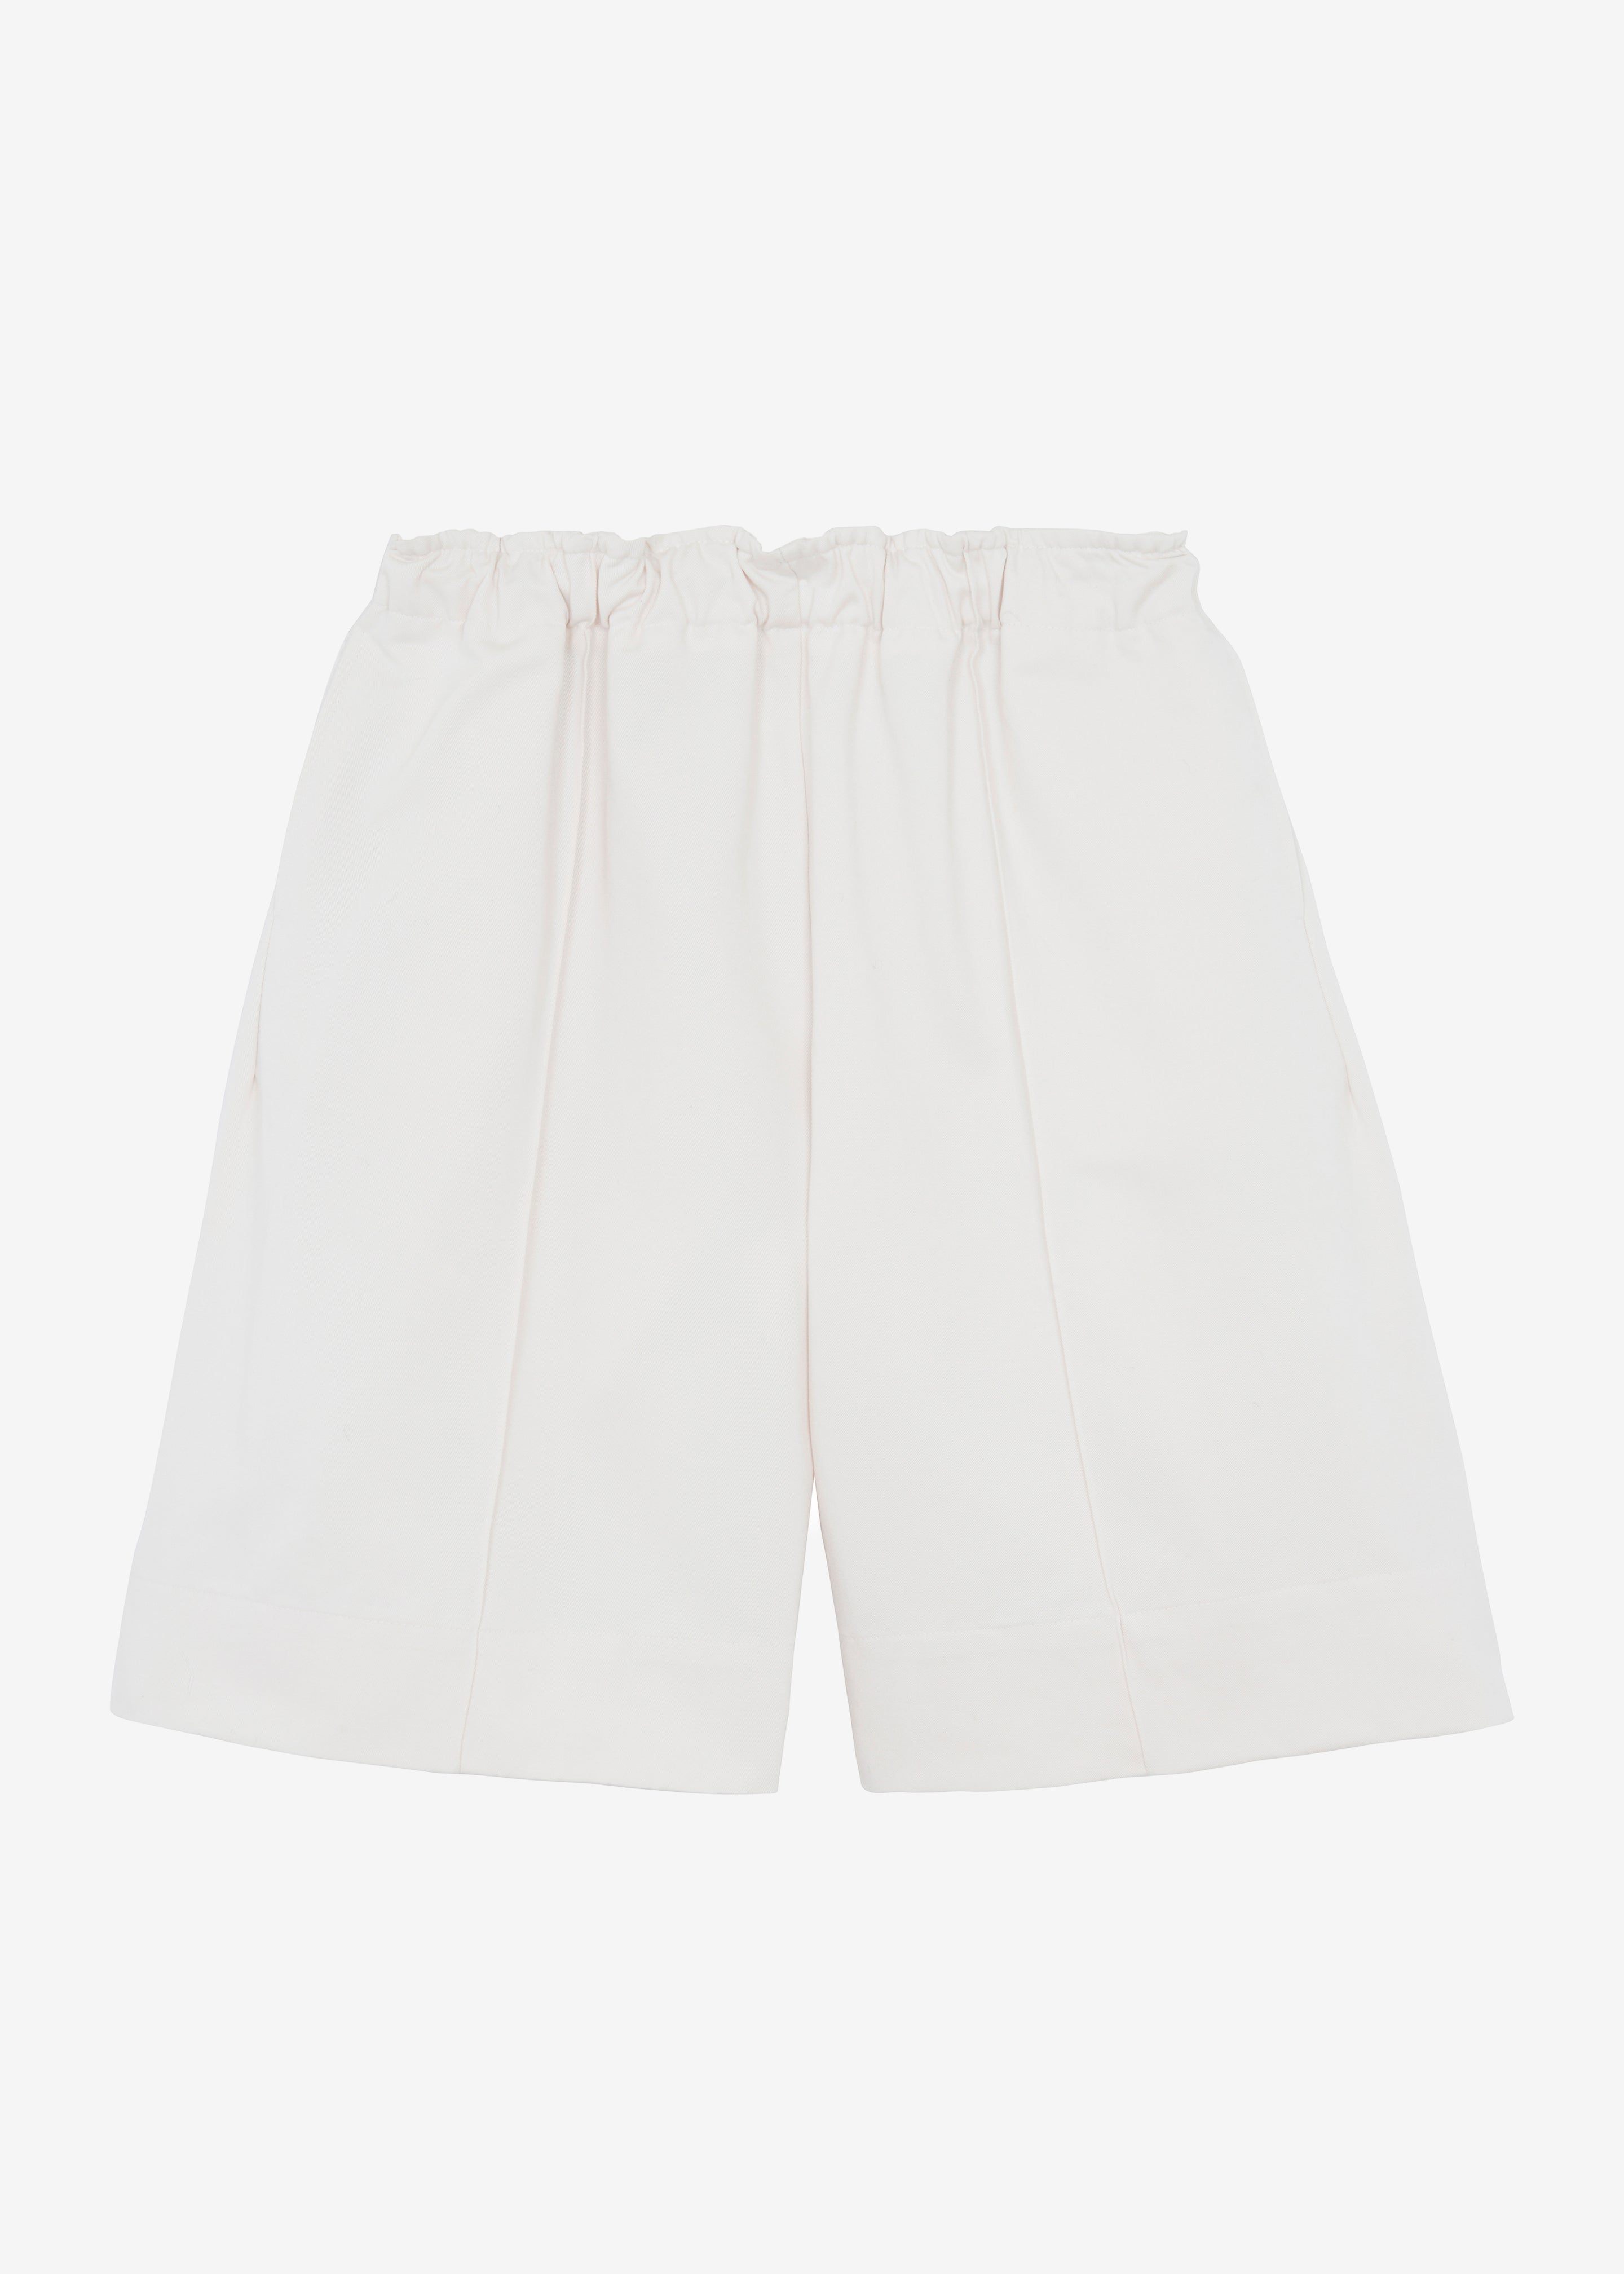 Adan Bermuda Shorts - Cream - 11